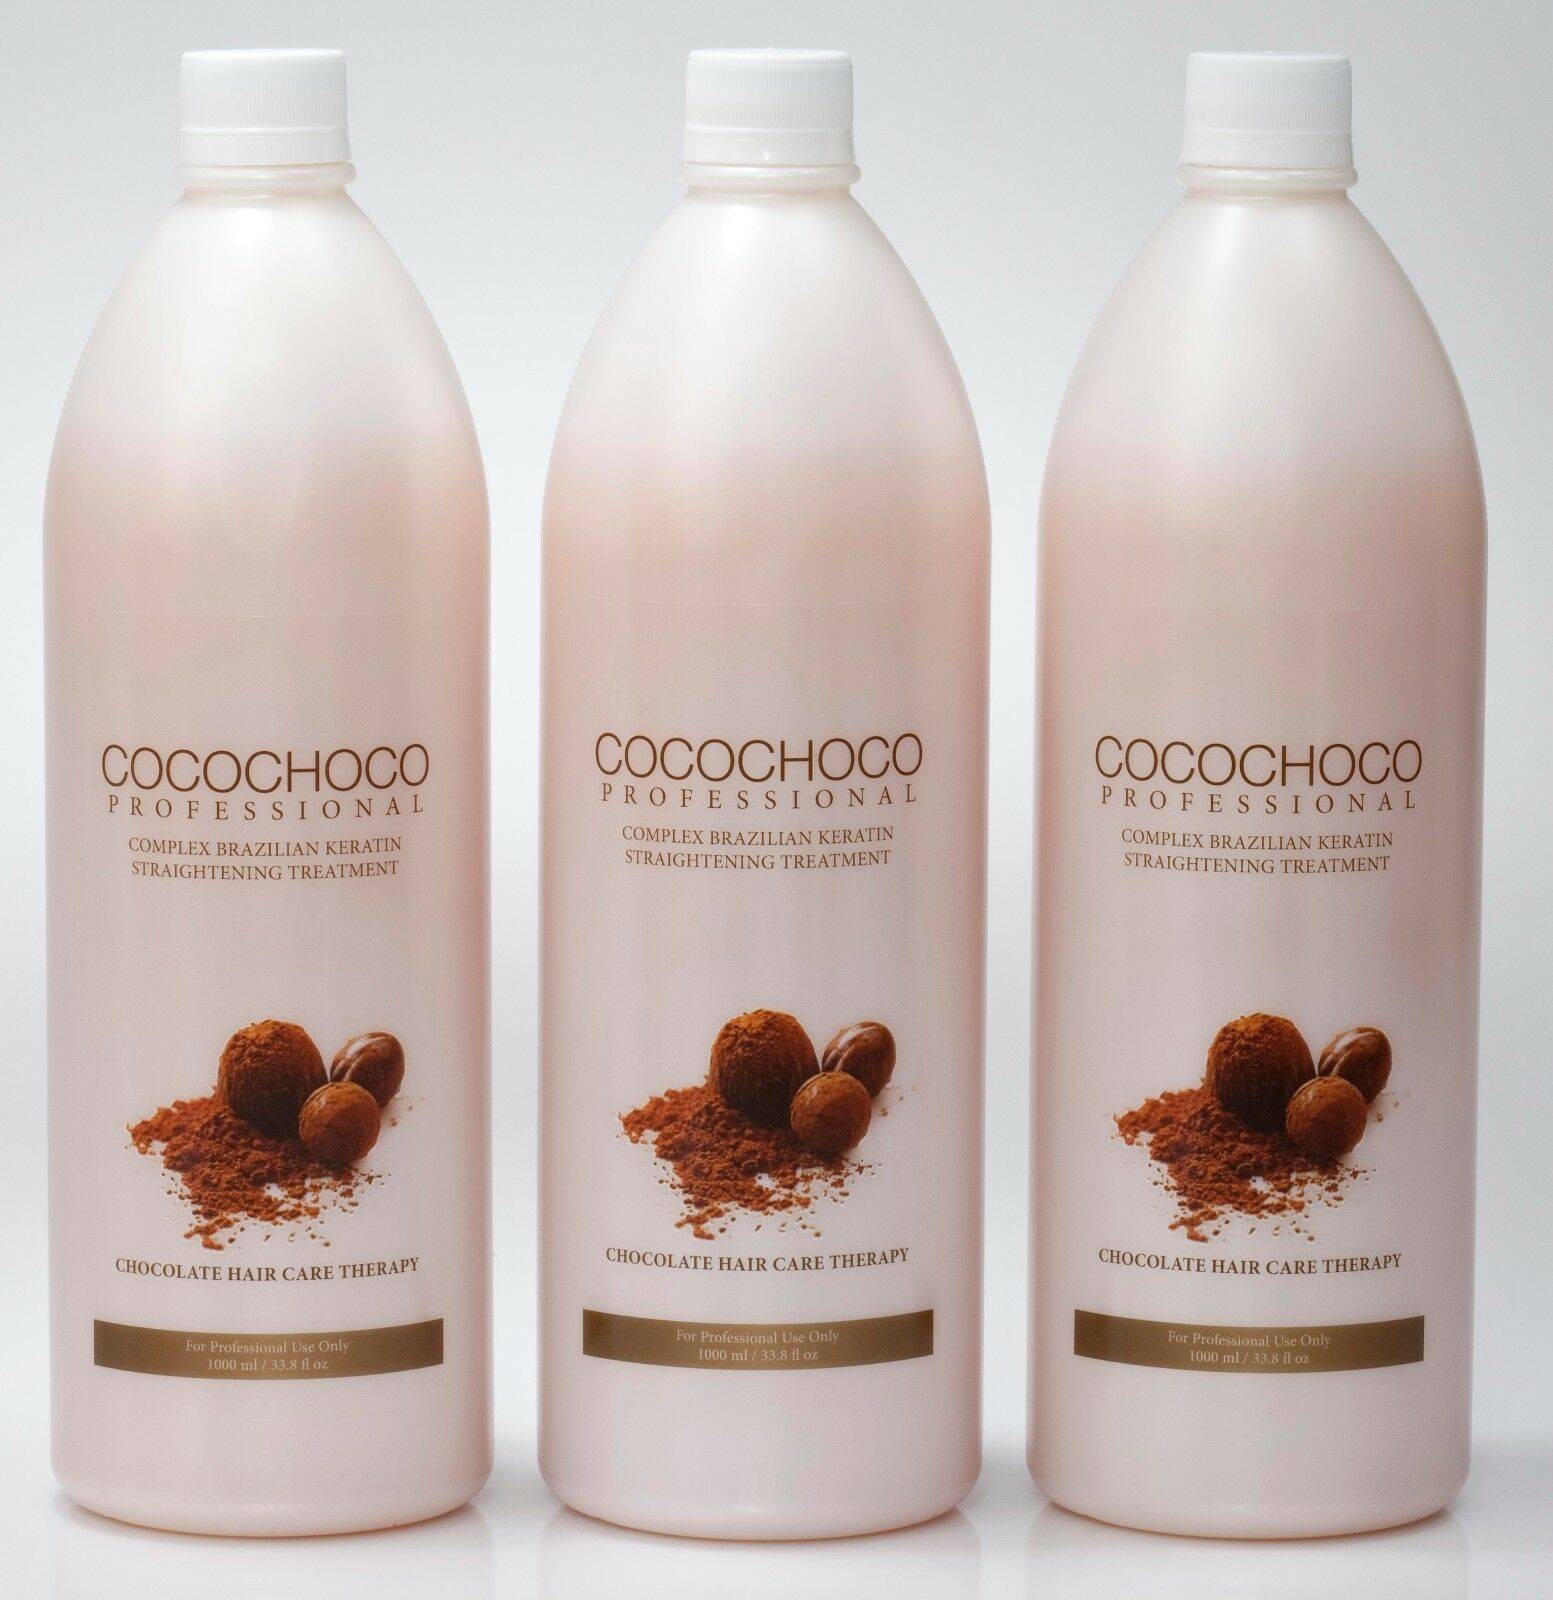 Cocochoco кератин: инструкция по применению бразильского коко чоко голд для выпрямления и восстановления волос, и состав препарата производимого в израиле